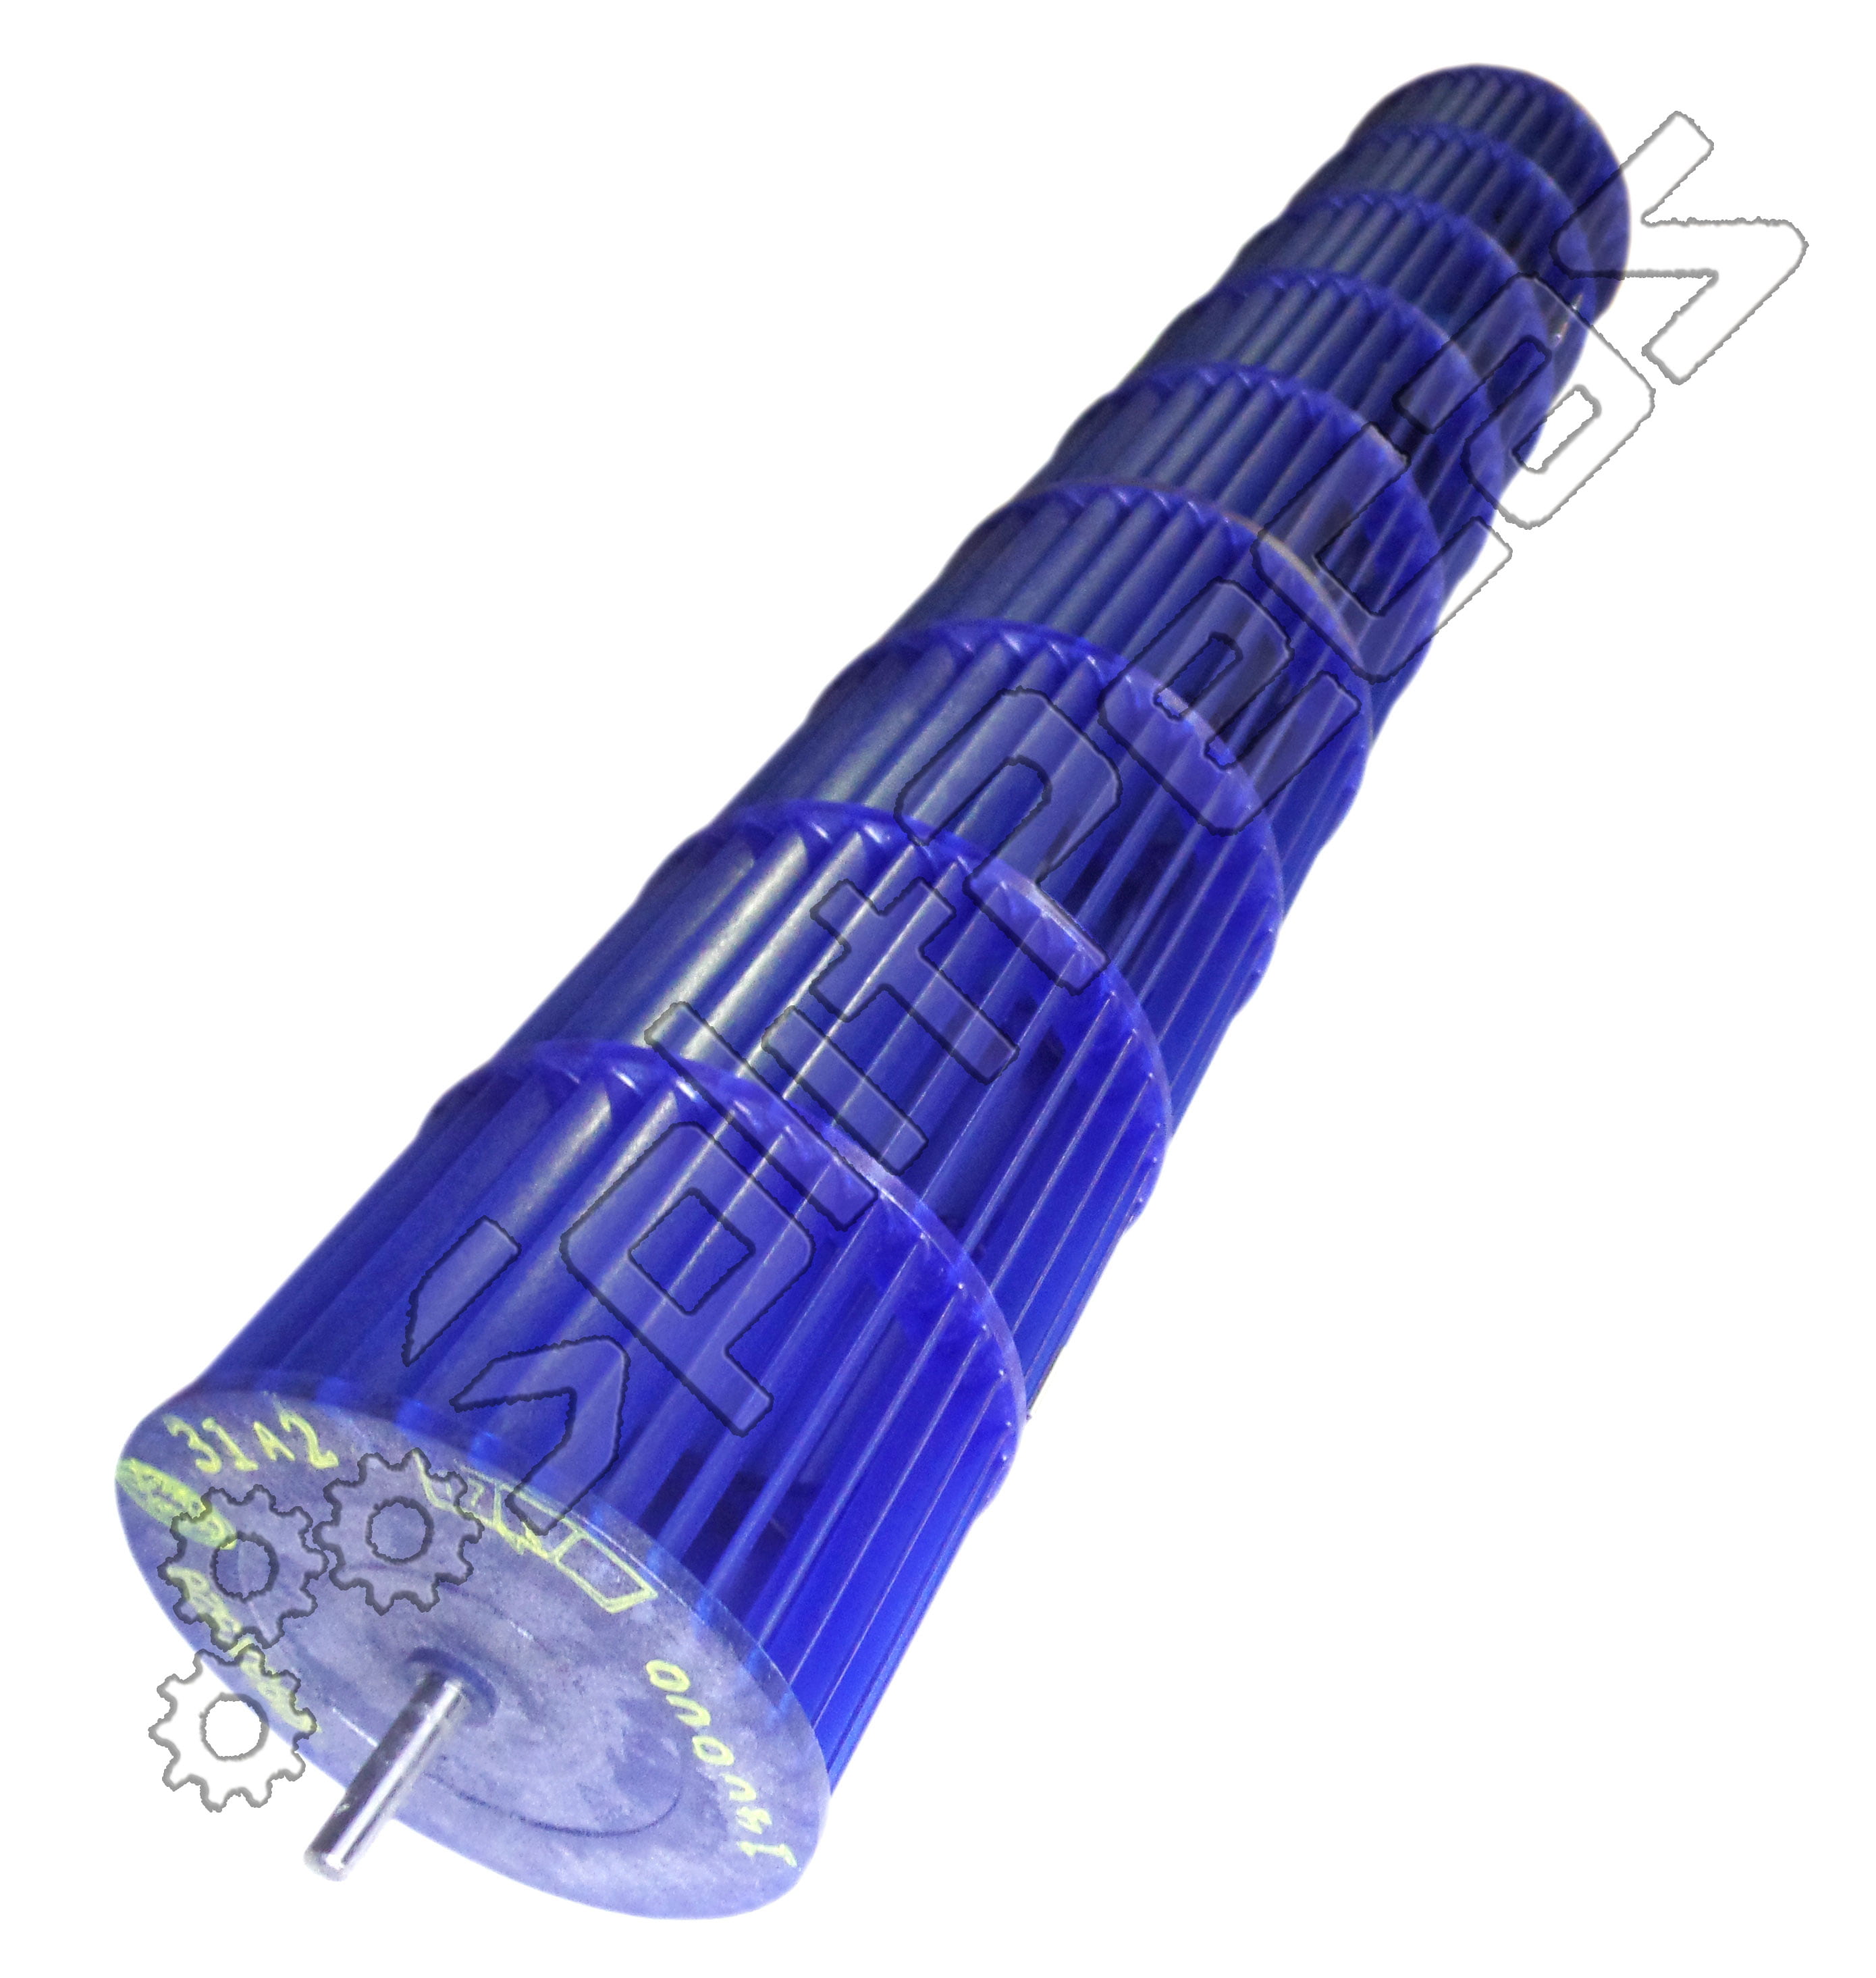 Turbina da Evaporadora Springer 9.000 Btus  093mm x528mm  201100200320